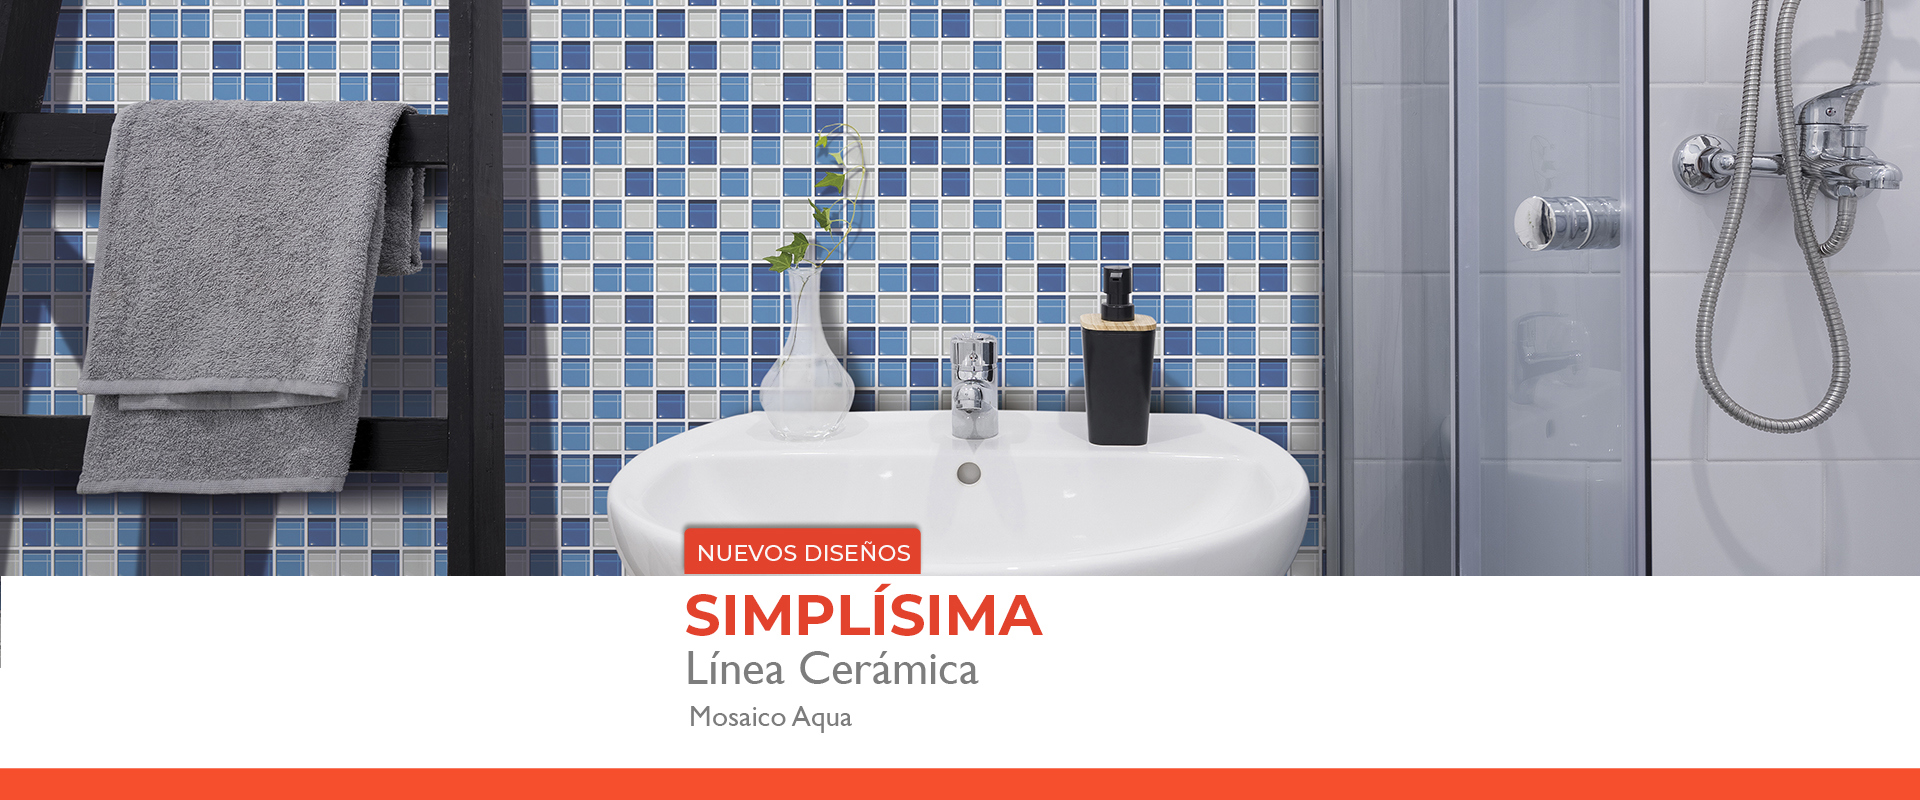 Linea-Ceramica-Mosaico-Aqua.jpg